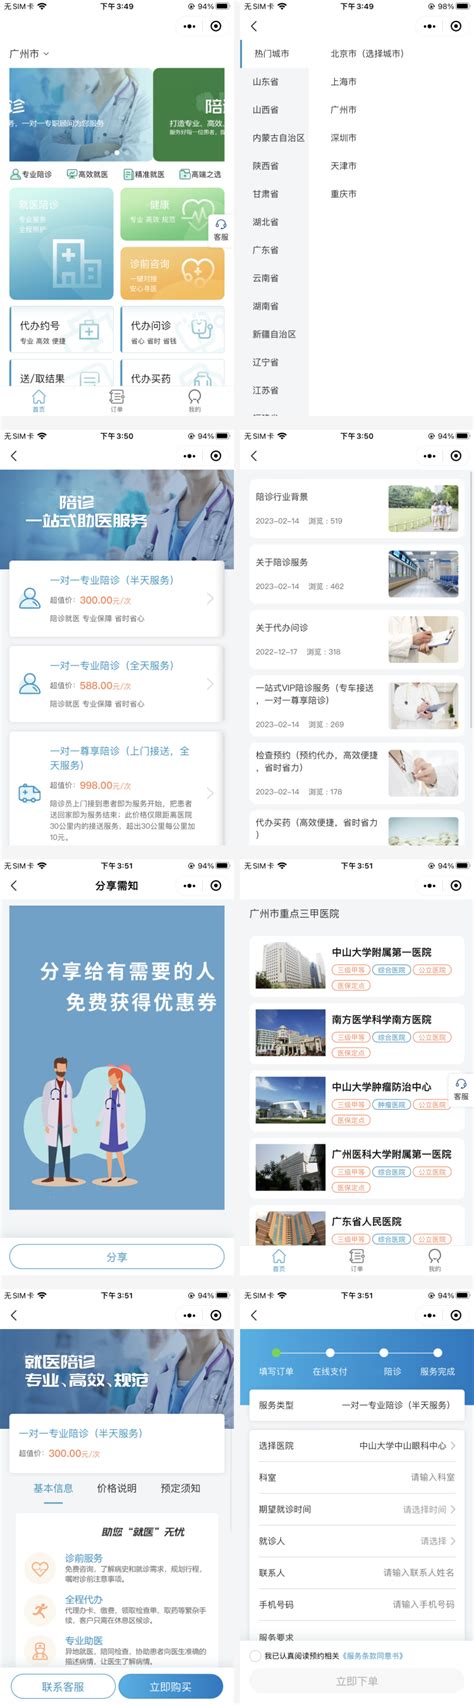 医养老人APP-健康ICF测评APP - 广州红匣子信息技术有限公司